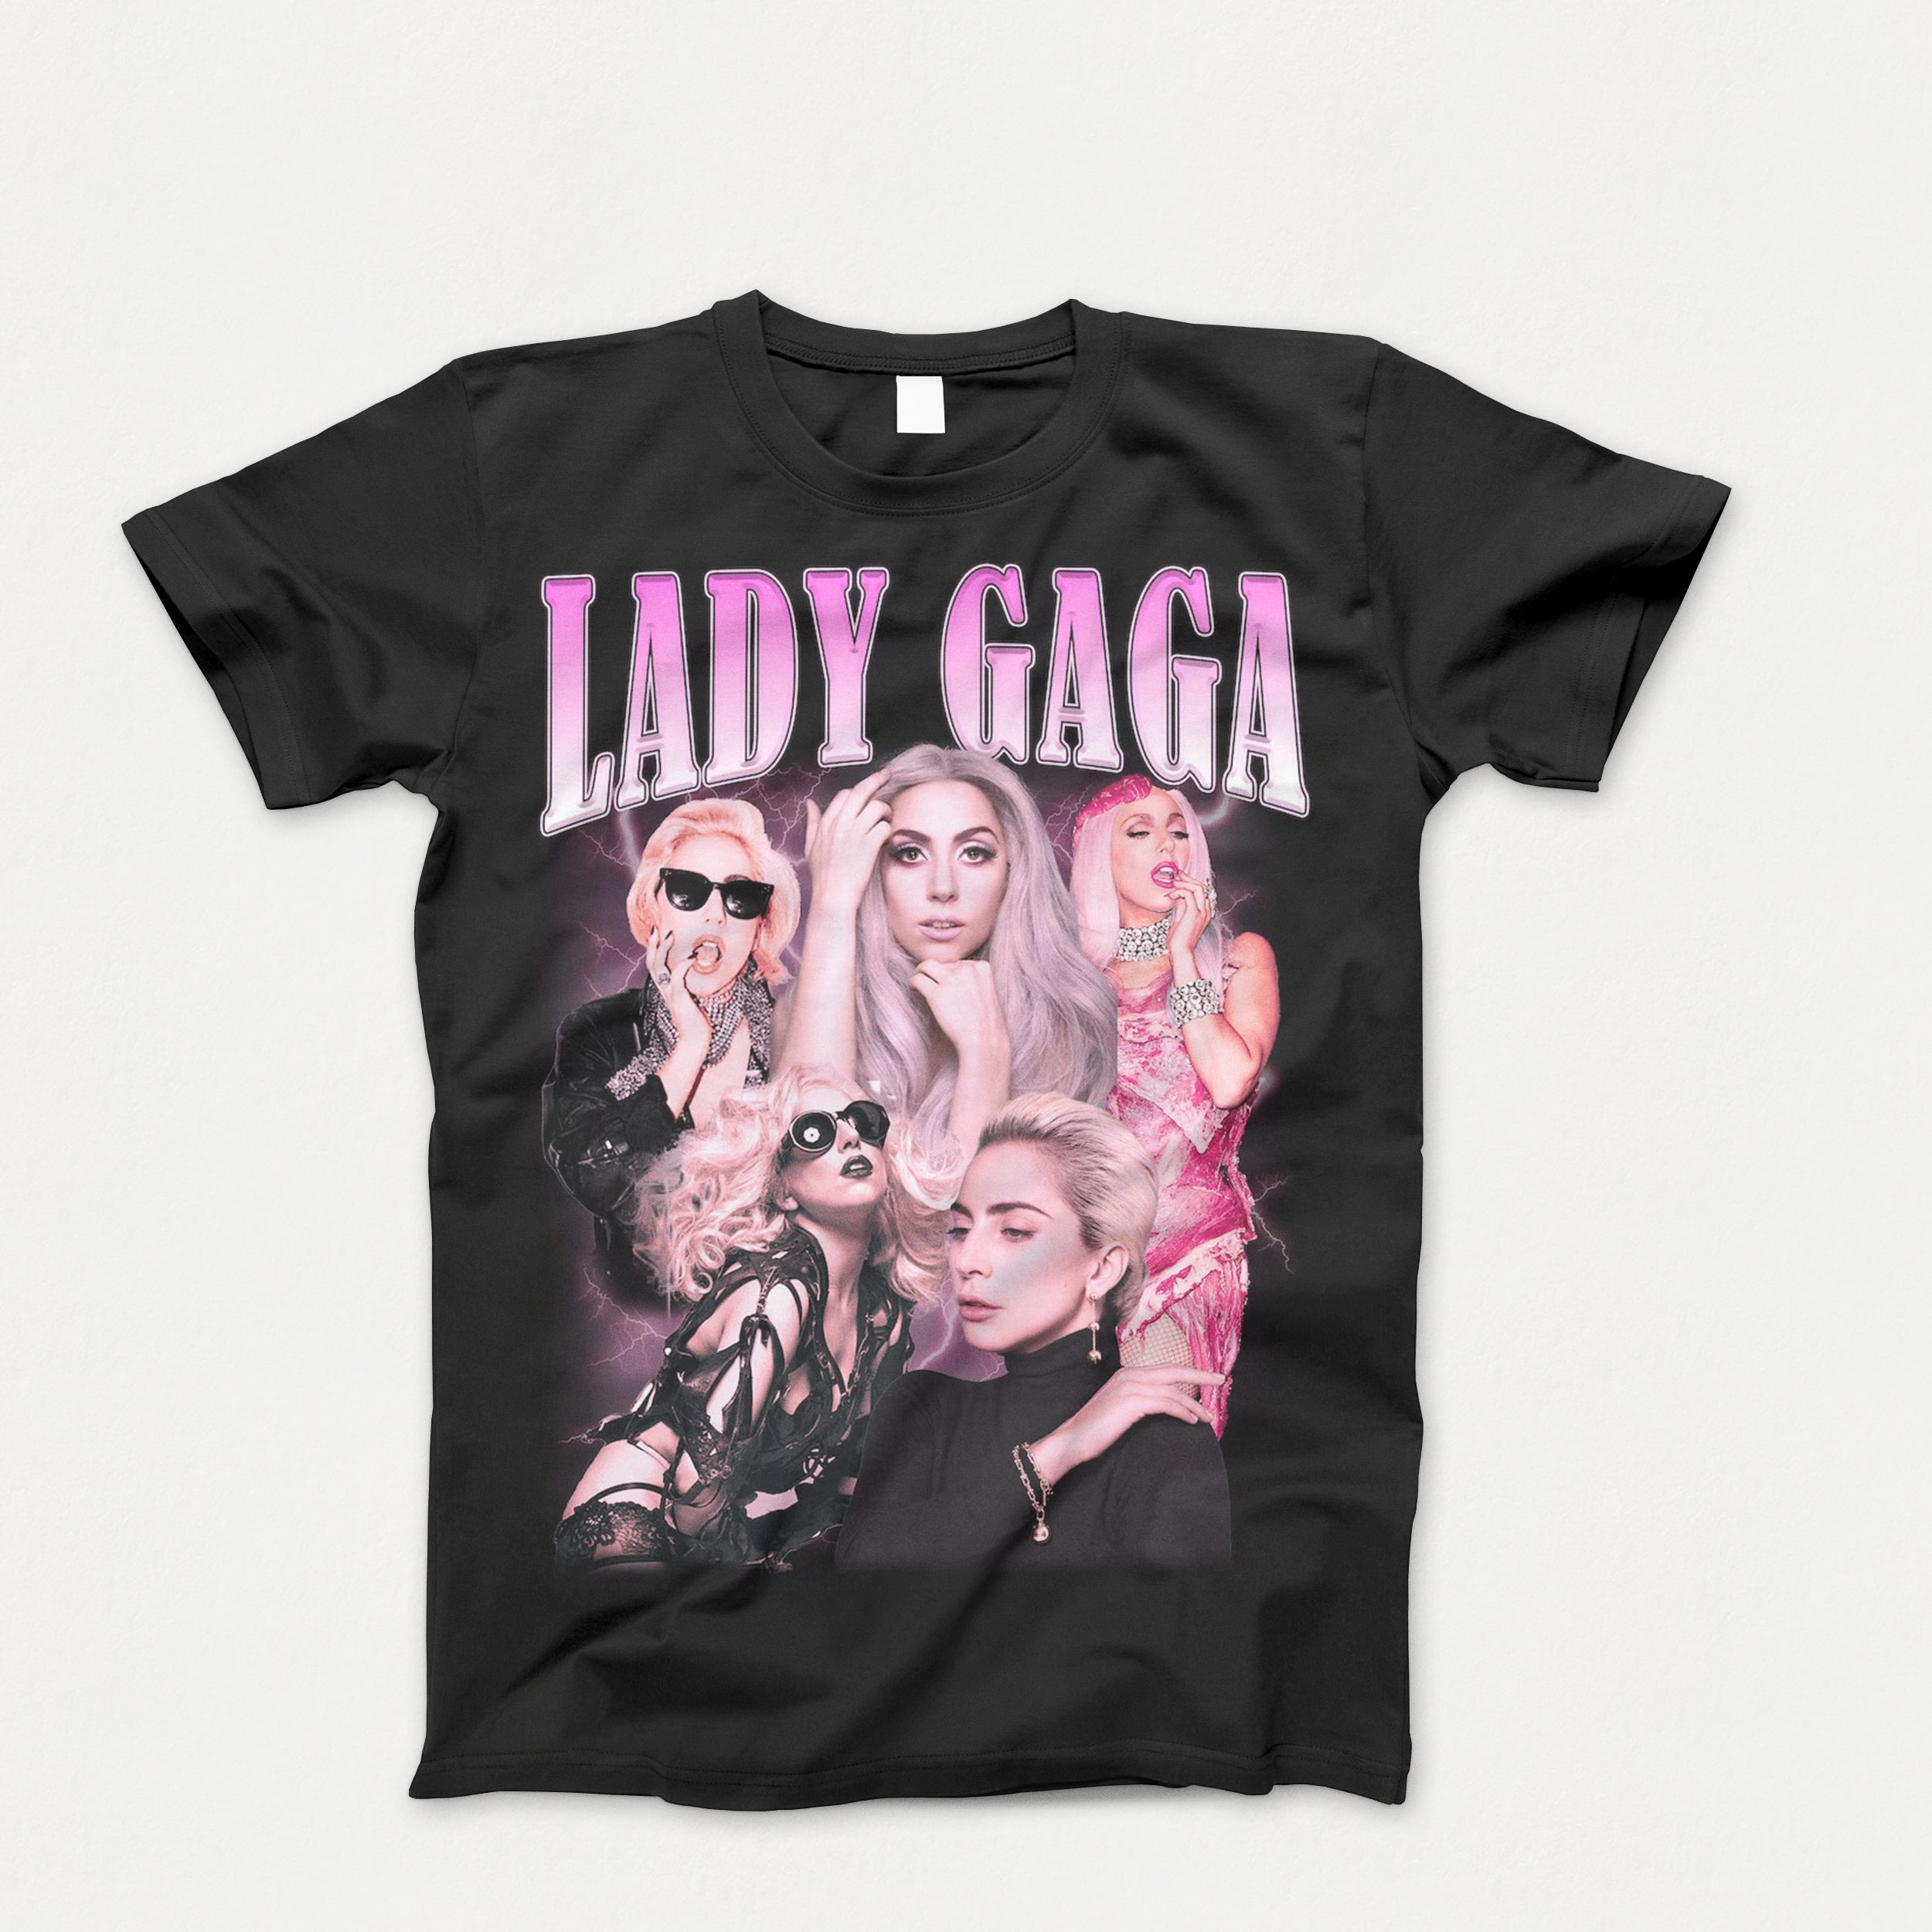 Kids Lady Gaga Tee Shirt